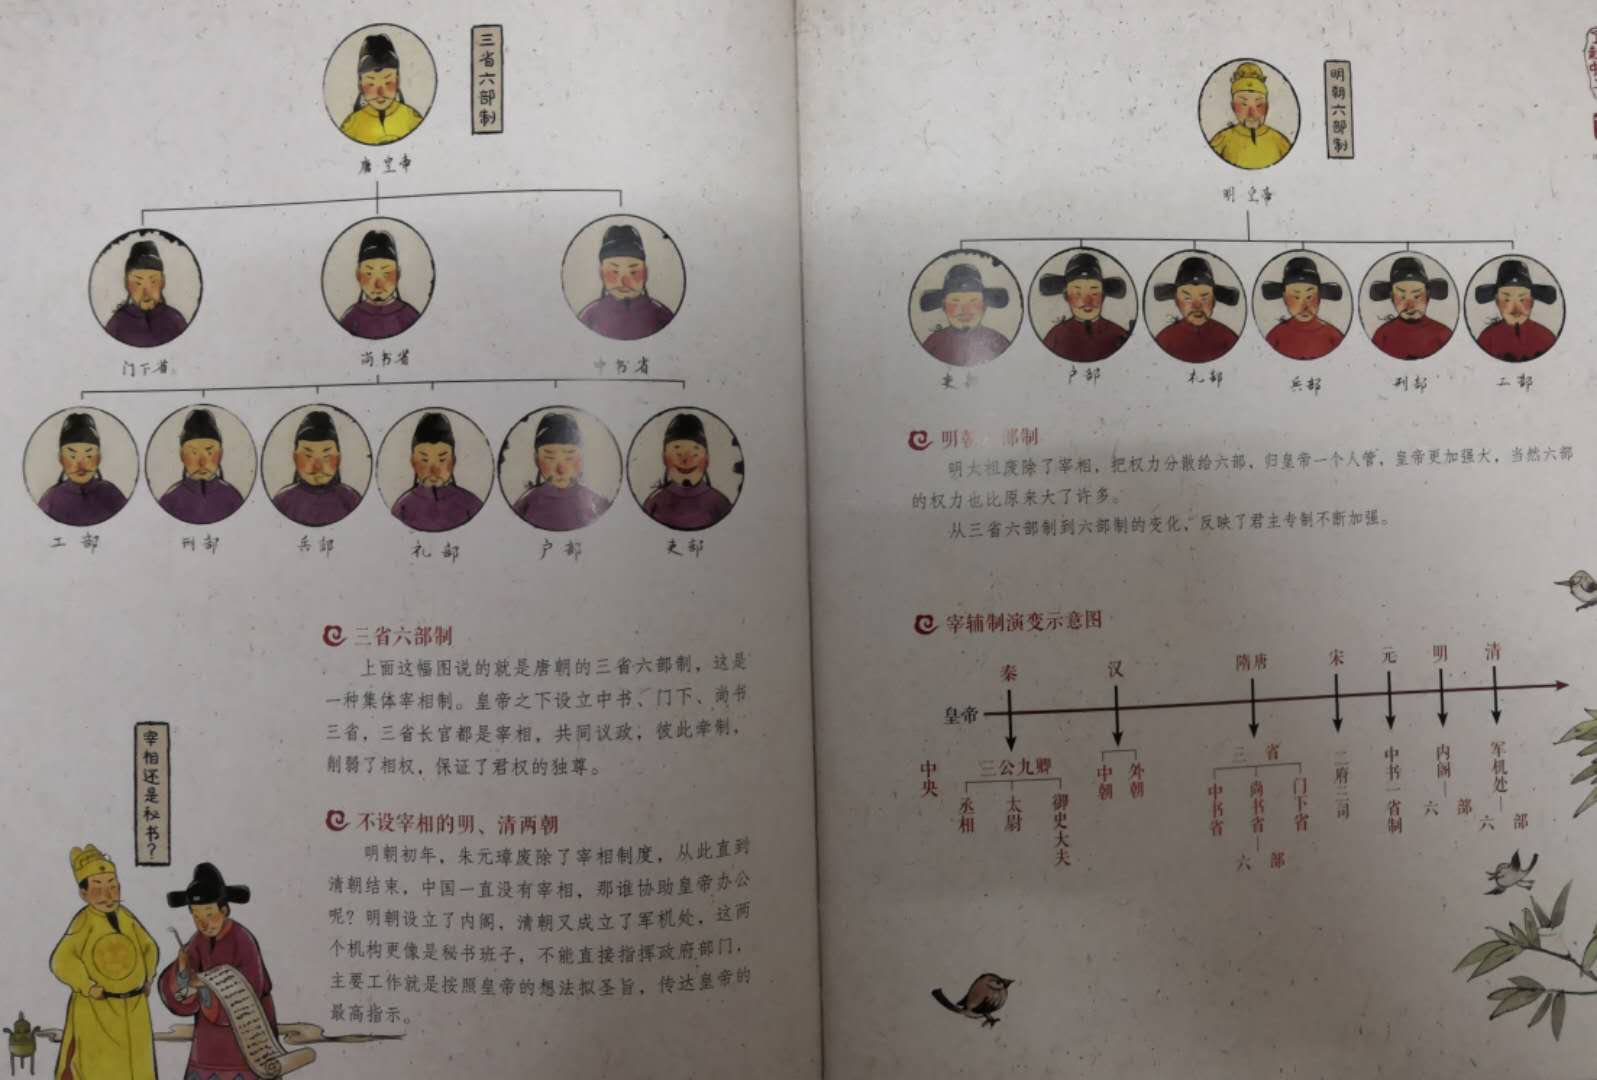 通过《中国诗词大会》喜欢上了蒙曼老师，有蒙曼老师主编的这套关于中国传统文化的书，就买来和孩子们一起品读。首先这套书真的不像别的传统文化的书那样枯燥无味，书上的语言风趣幽默，小孩子理解起来比较容易；其次，这套书的画风很有中国味儿！可见编著者的良苦用心了！最后一点是我最最喜欢的，就是上面的不常见的生僻字或者多音字都有拼音标注，真的是太太太方便阅读了。现在的孩子真是幸福啊！可以通过这么好的书来了解中国，这套书也适合送给外国友人，因为是蒙曼老师主编，必须推荐！特意拍些内页图片供大家参考。